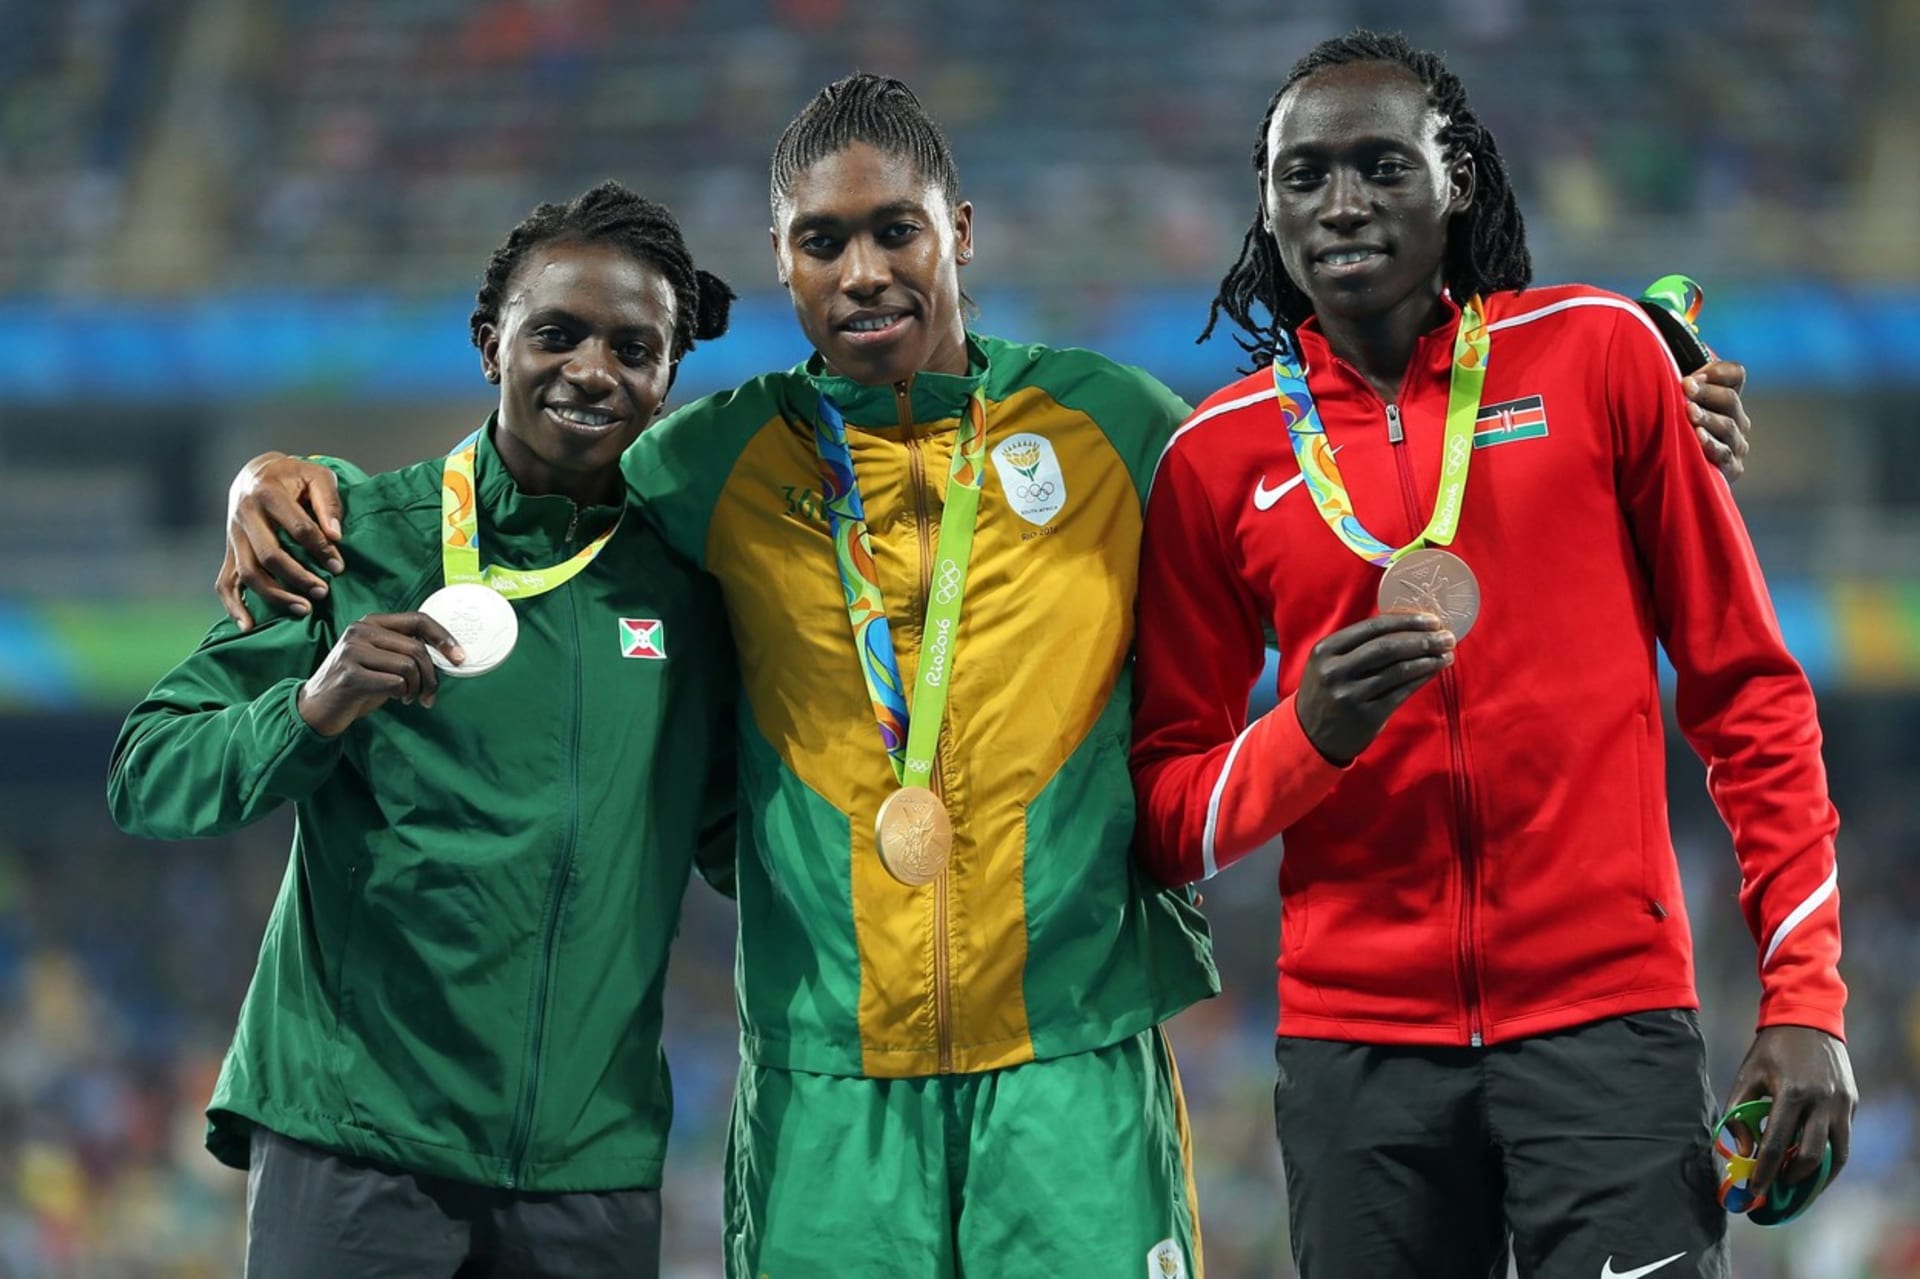 Trio olympijských medailistek z běhu na 800 metrů z Ria de Janeira 2016. Zleva Francine Niyonsabaová, Caster Semenyaová a Margaret Wambuiová.